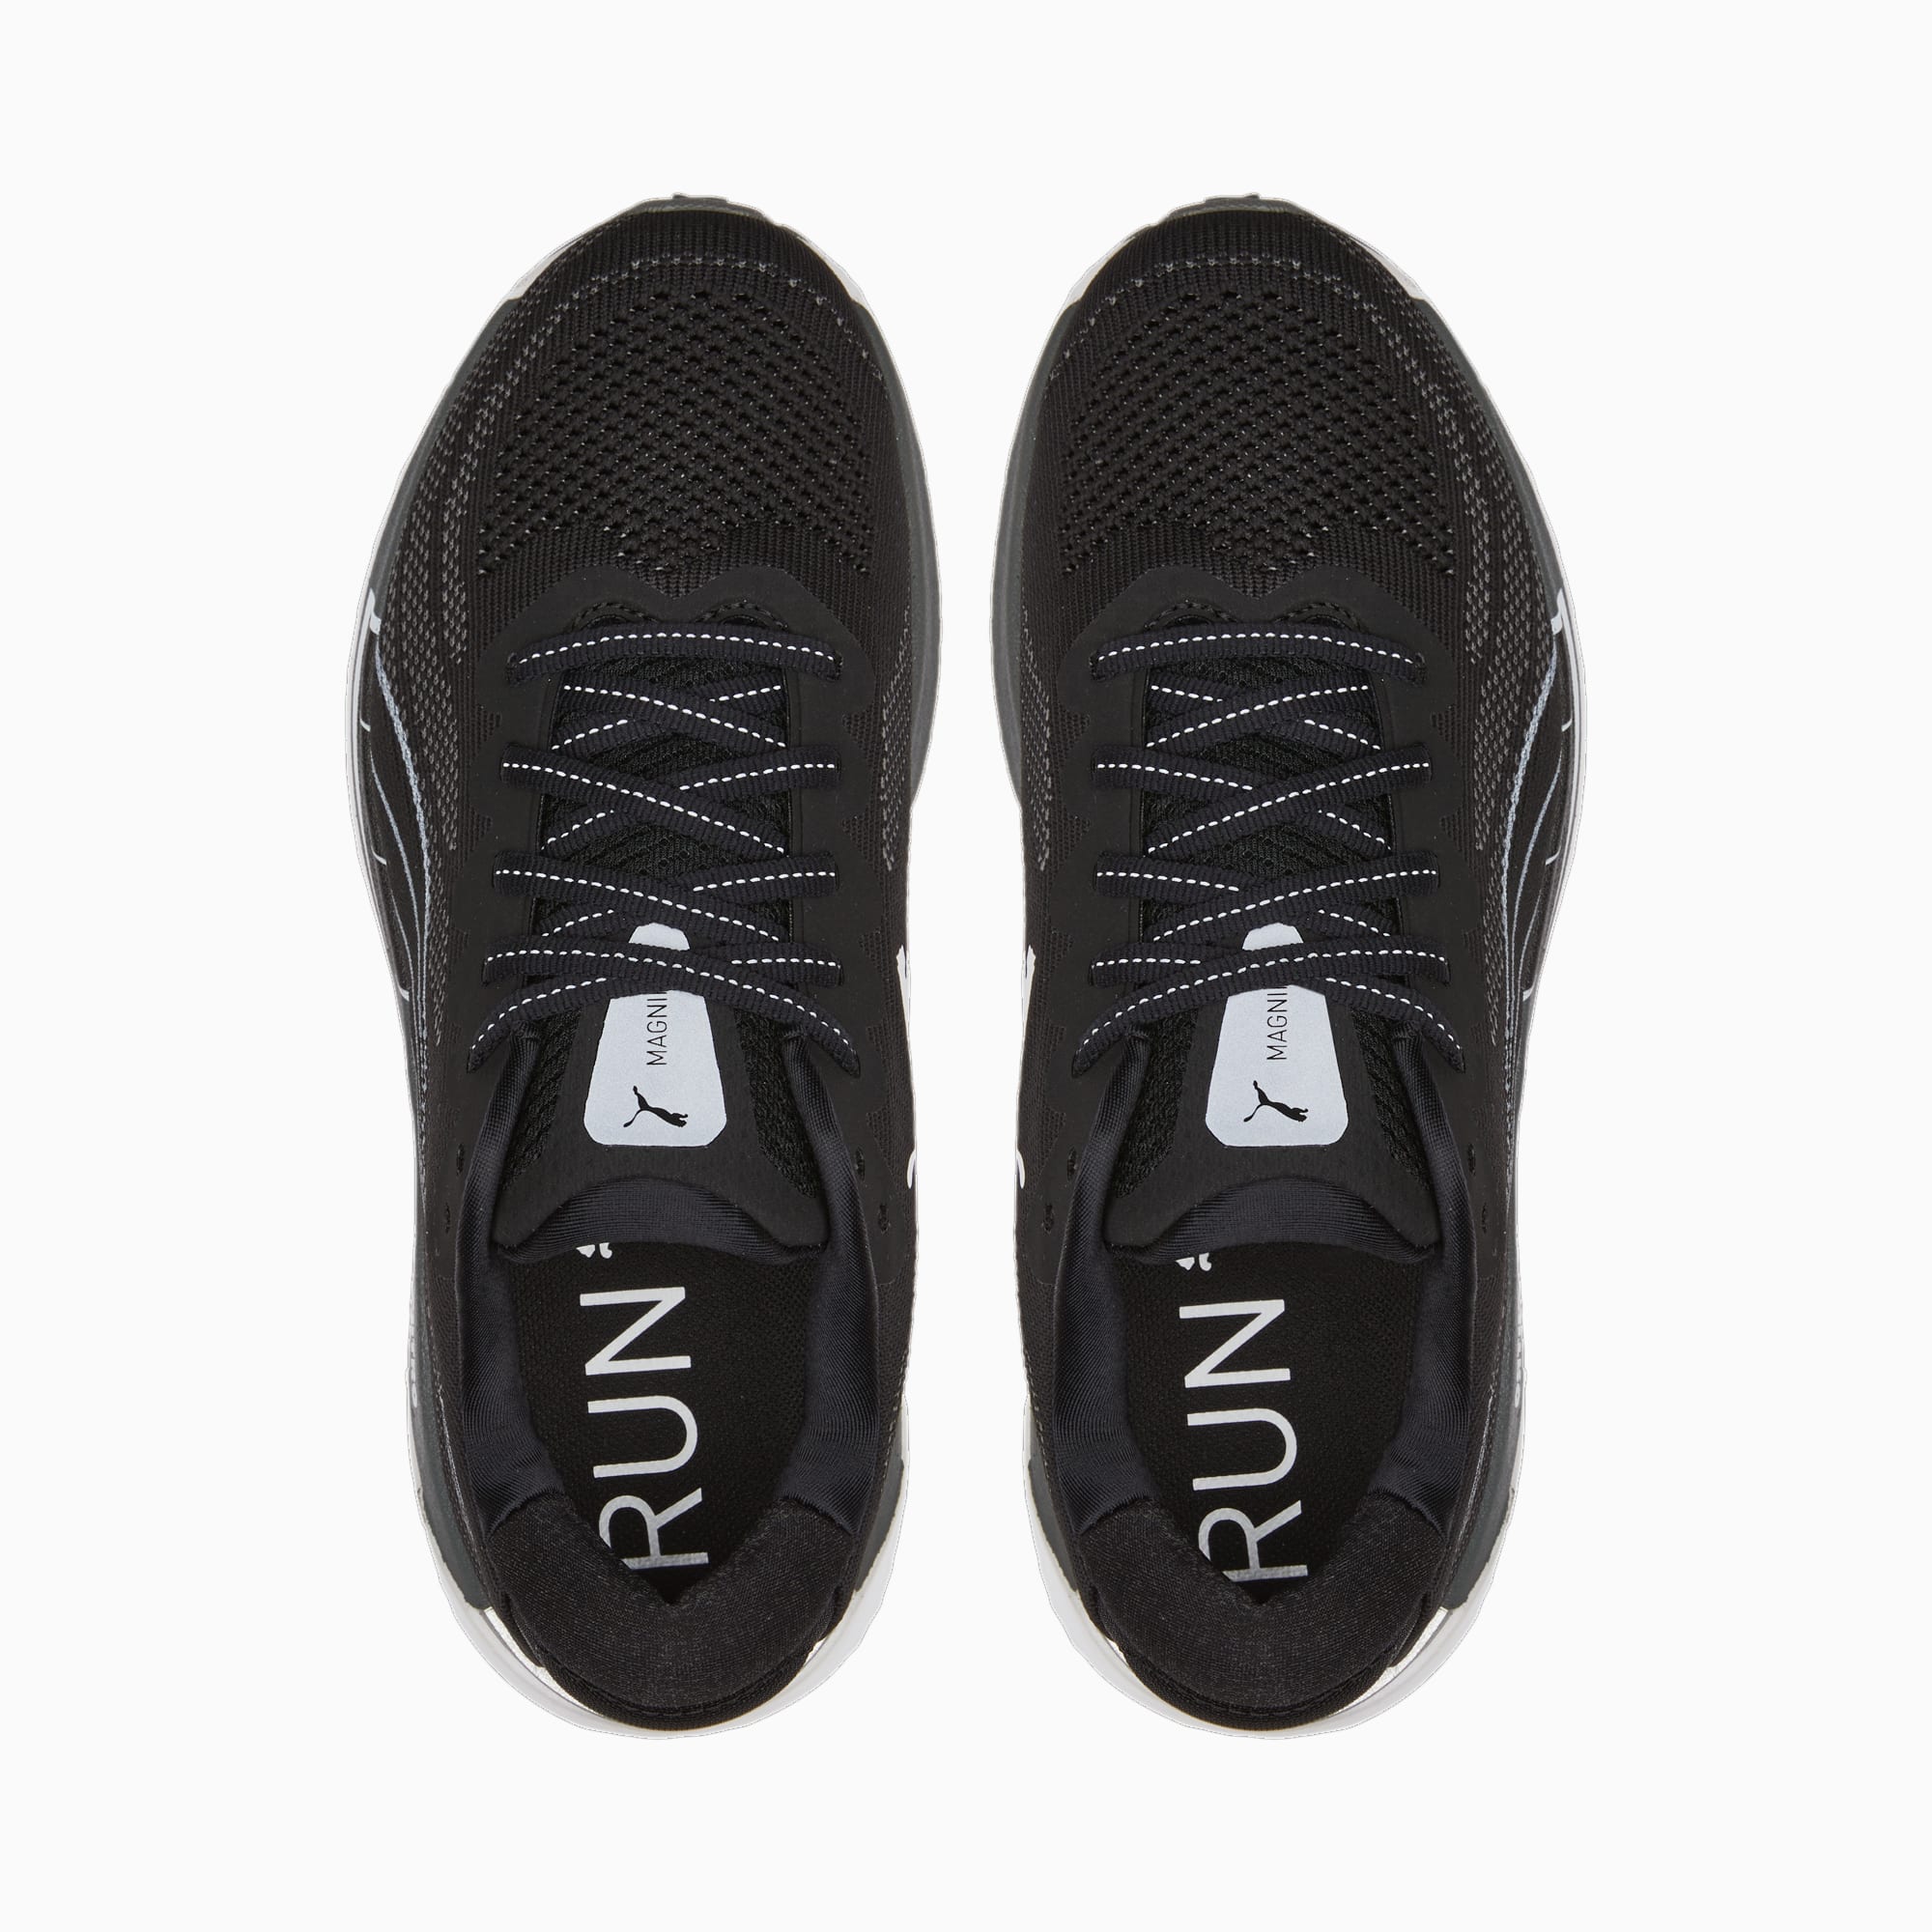 PUMA Chaussures De Sport Magnify NITRO Knit Homme Pour Femme, Noir/Gris/Blanc